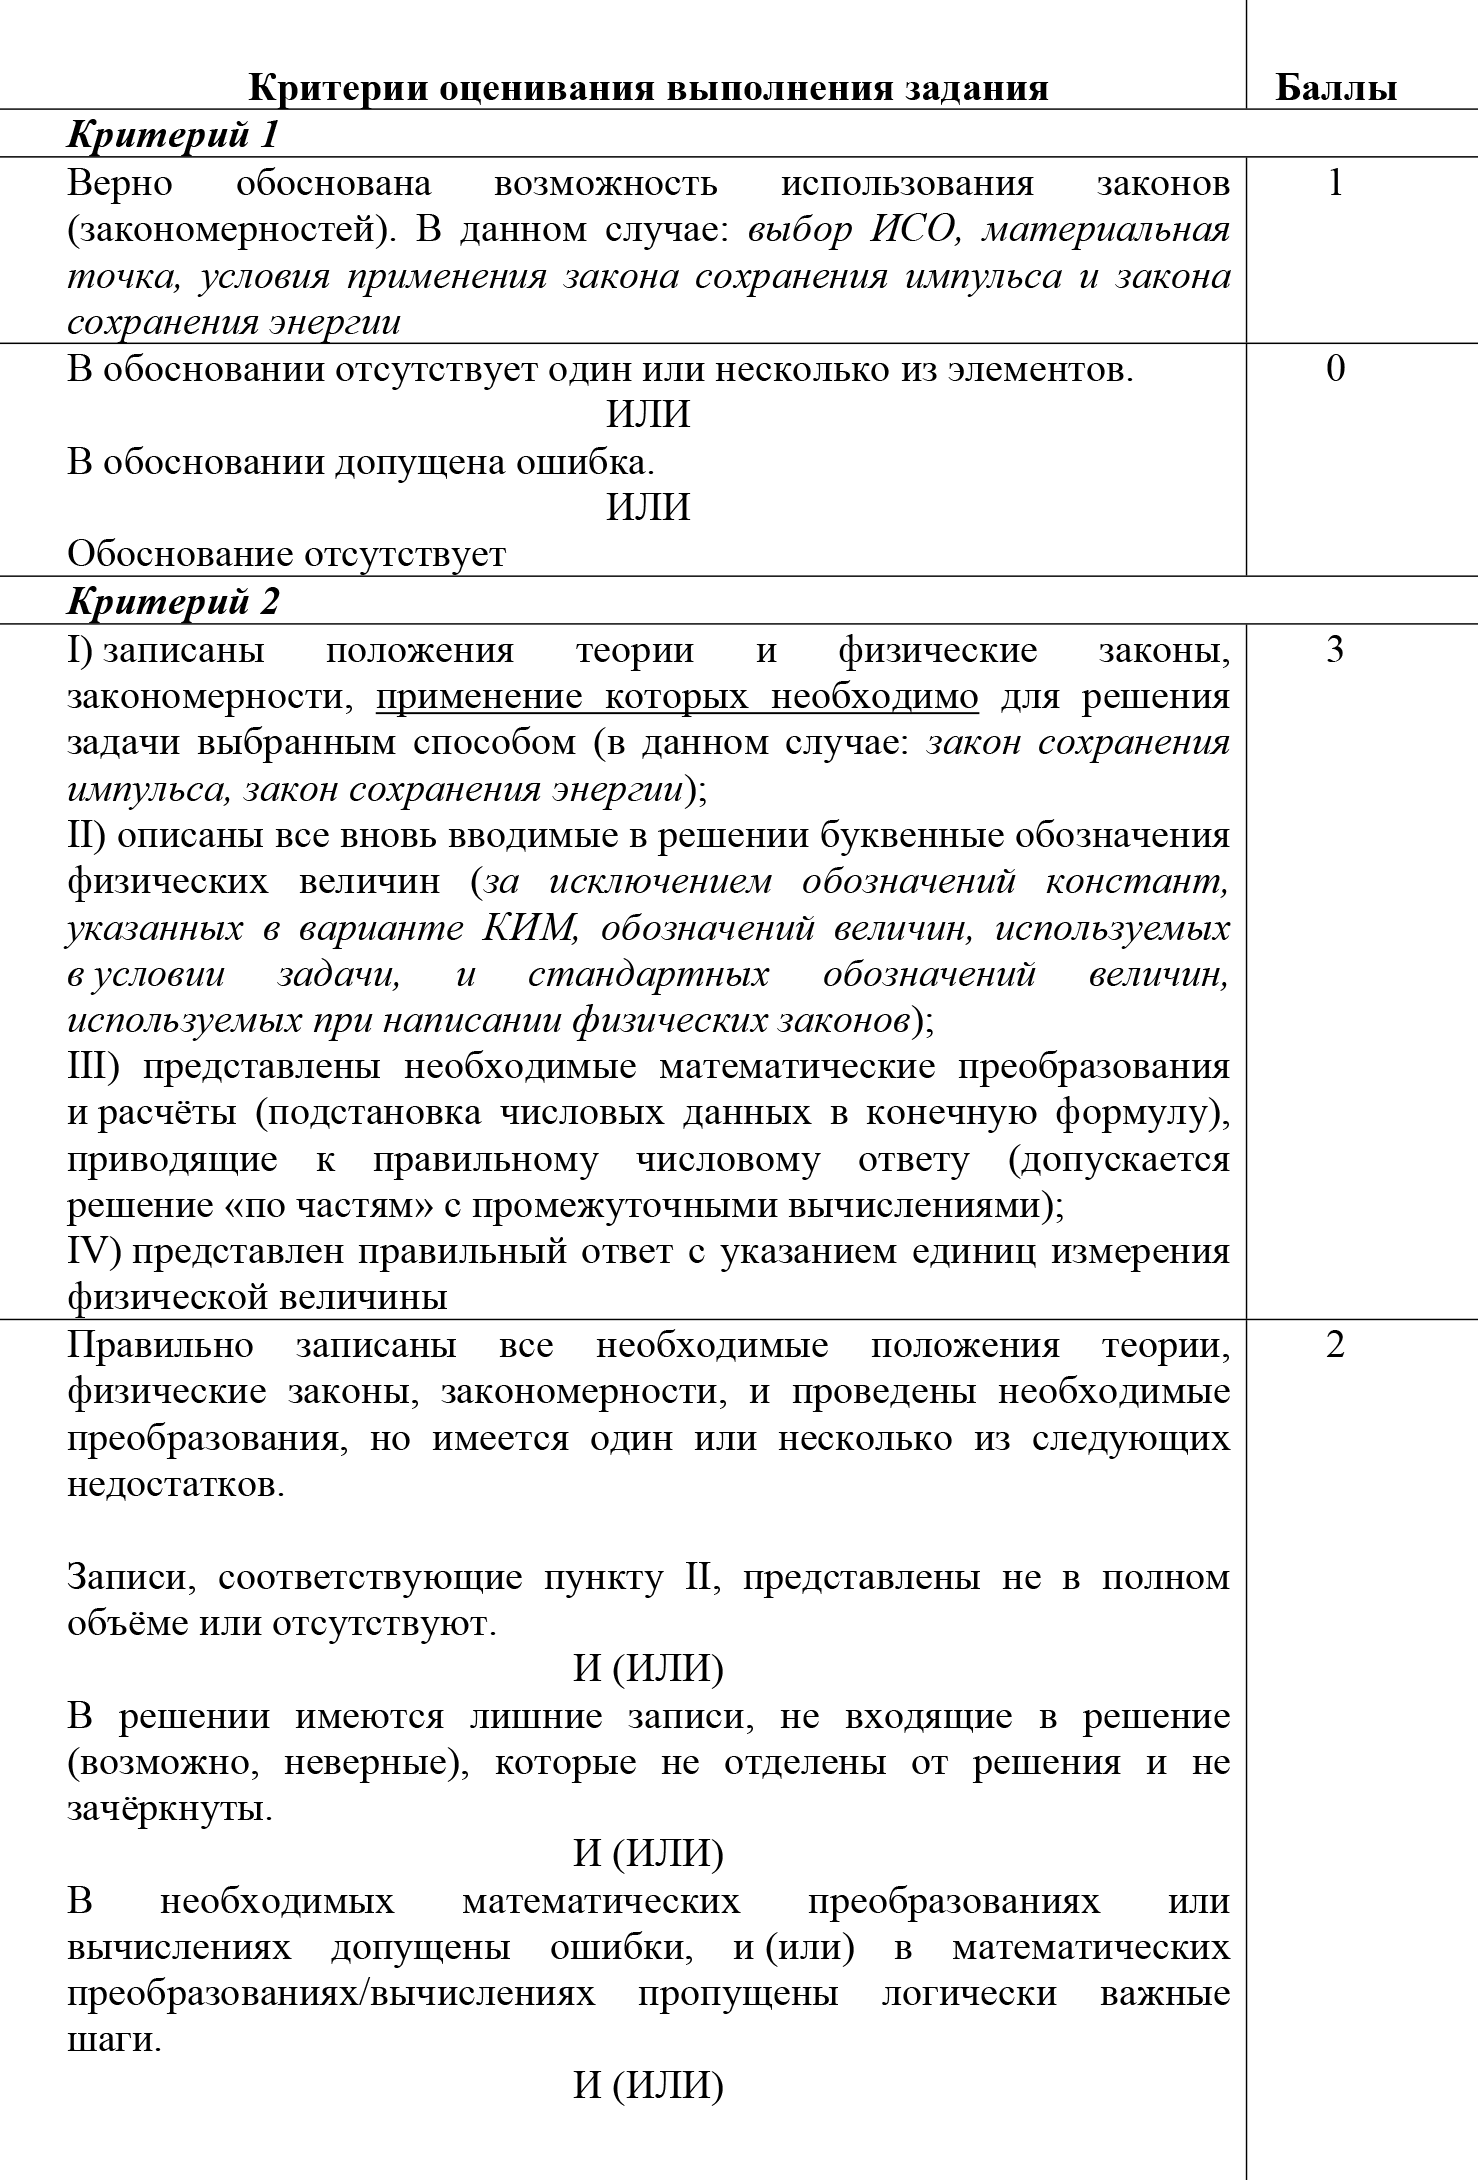 Критерии оценивания задачи 26 и ее демонстрационный вариант. Источник: fipi.ru